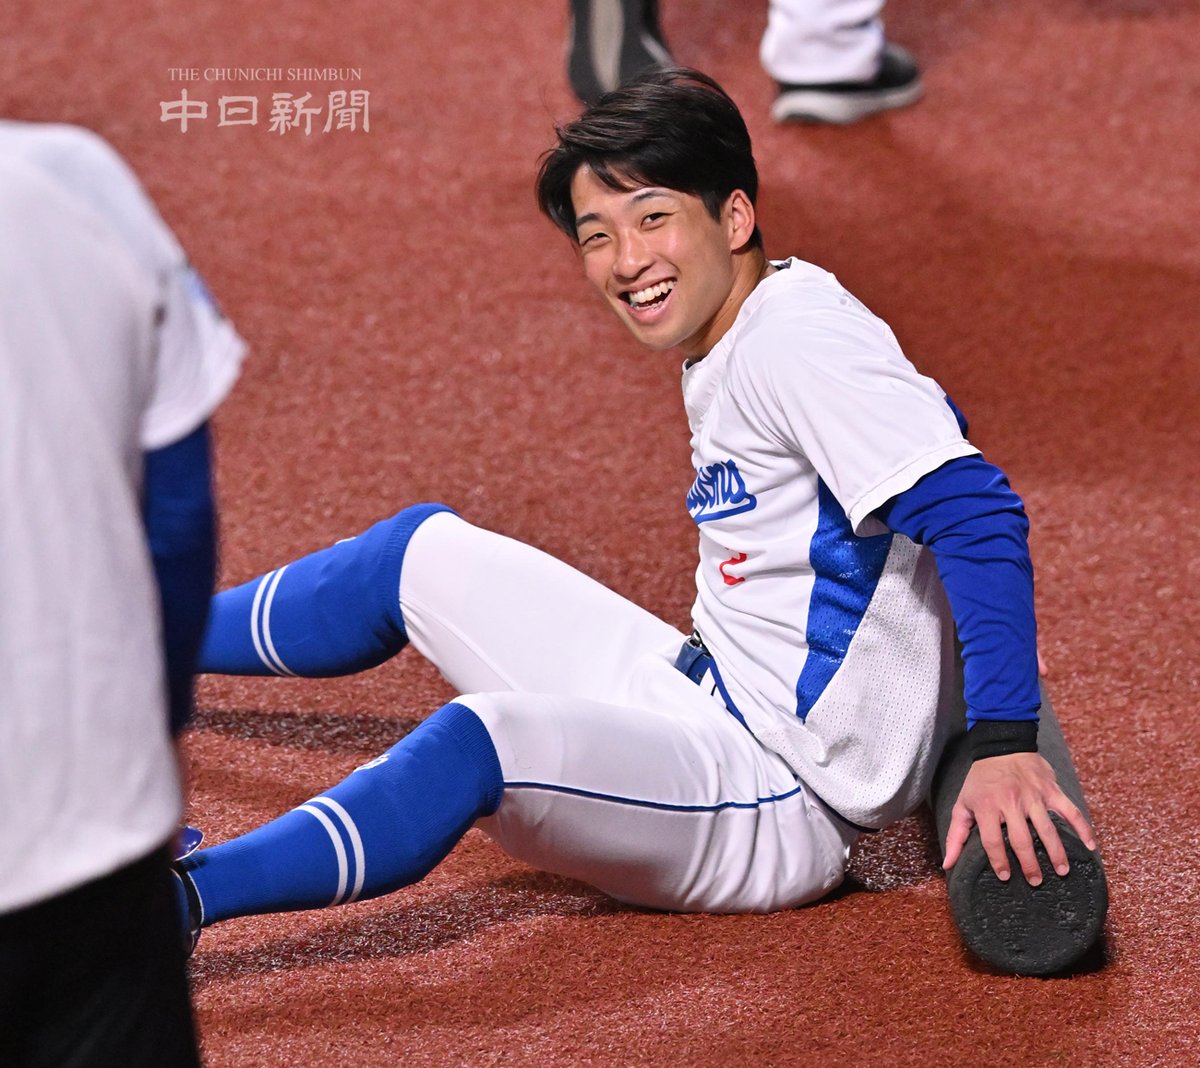 【ドラゴンズ】
明るい表情でウオーミングアップする田中幹也選手
#ドラゴンズ #中日新聞 #中日スポーツ